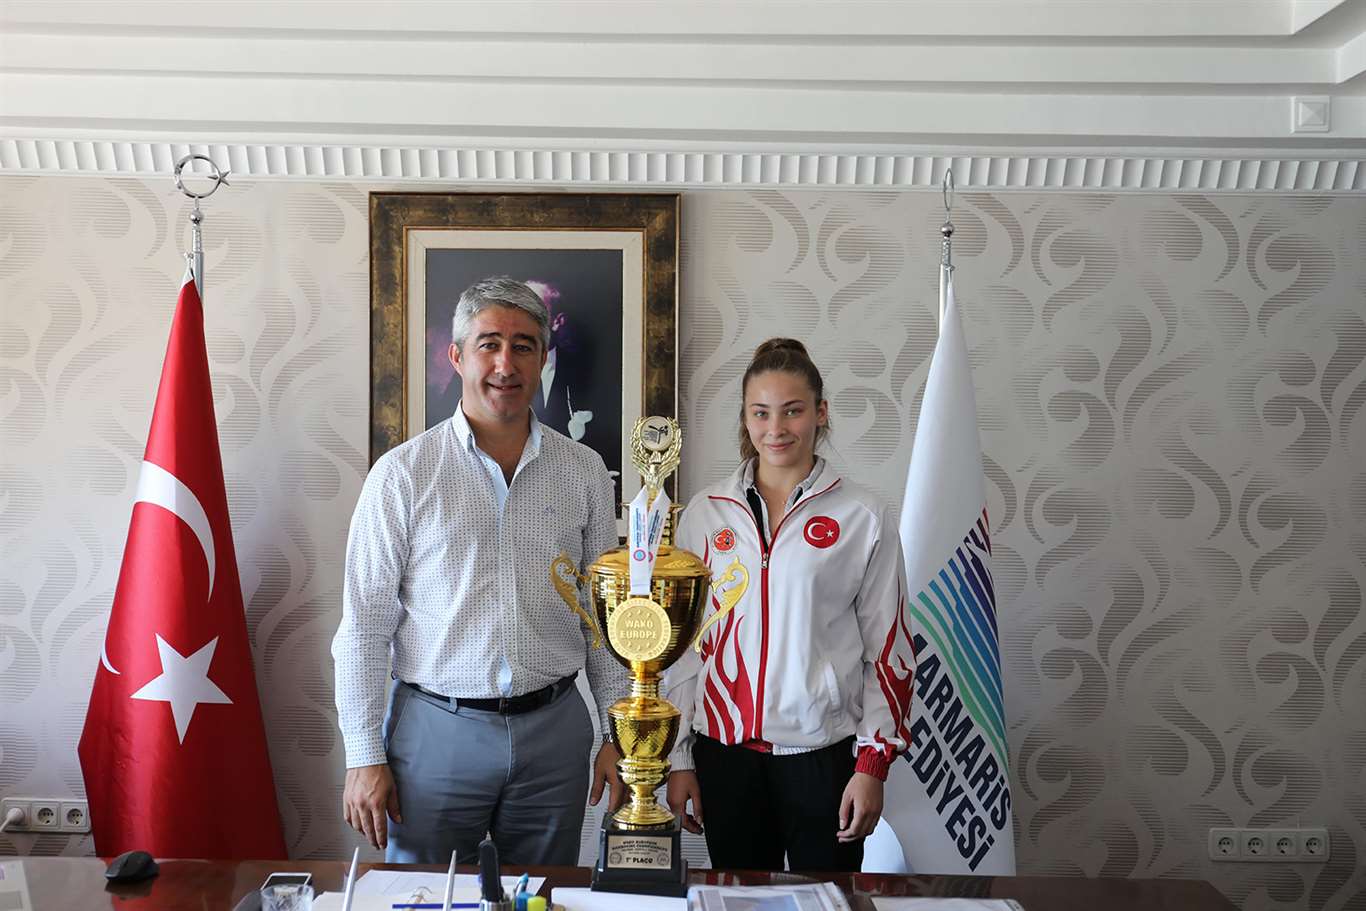 Şampiyon İlknur, kupasını Başkan Oktay'a getirdi haberi